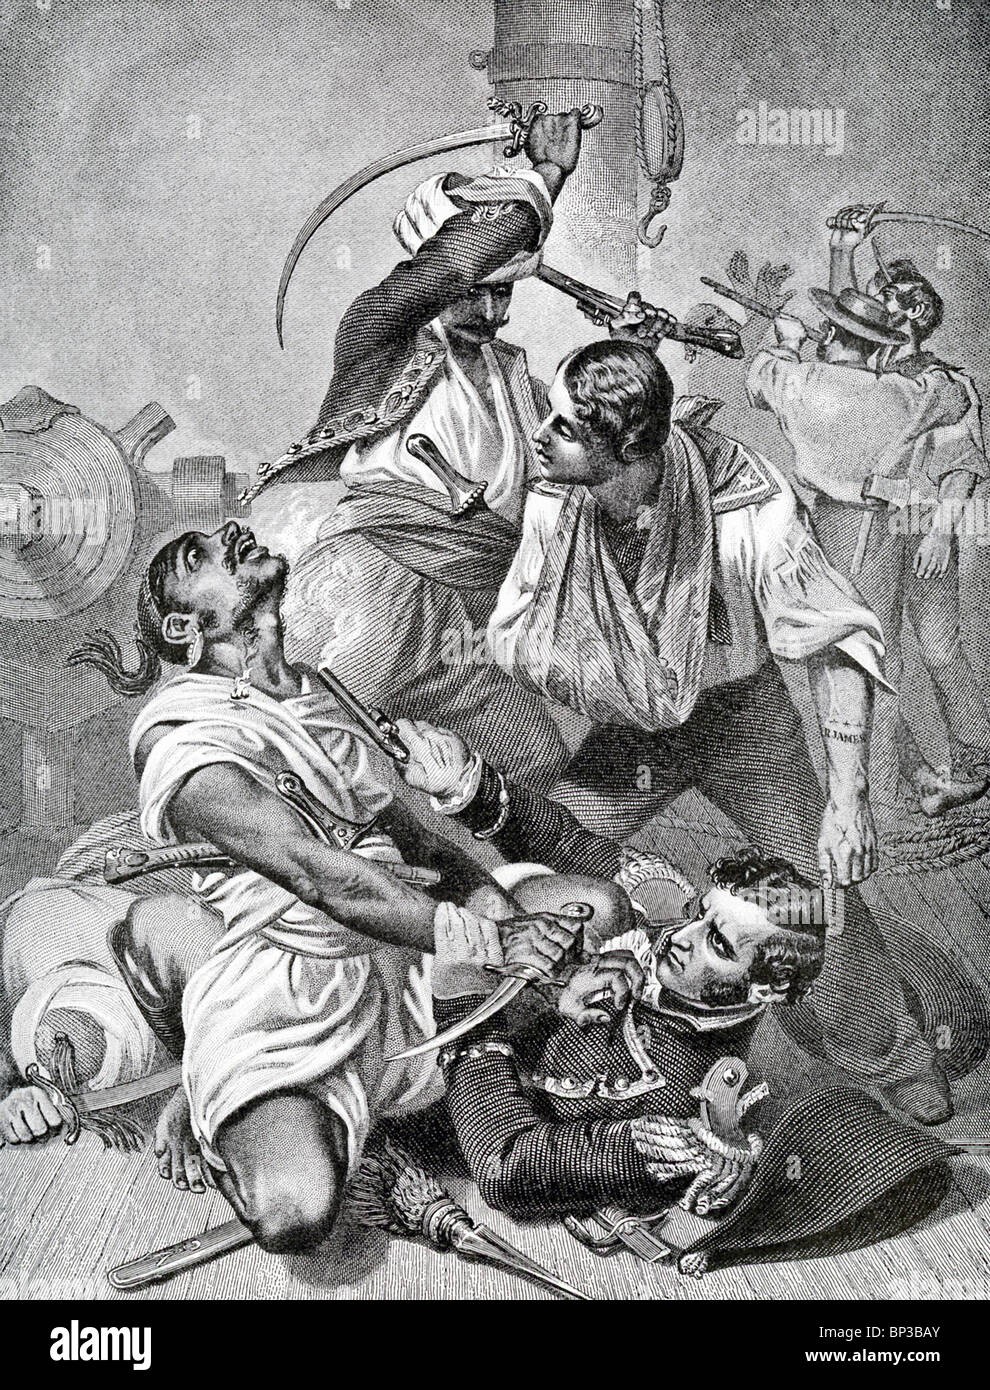 Decatur (sul terreno) e boatswain mate Ruben James (al di sopra di Decatur a destra) battaglia pirati barbareschi a noi Filadelfia nel 1803. Foto Stock